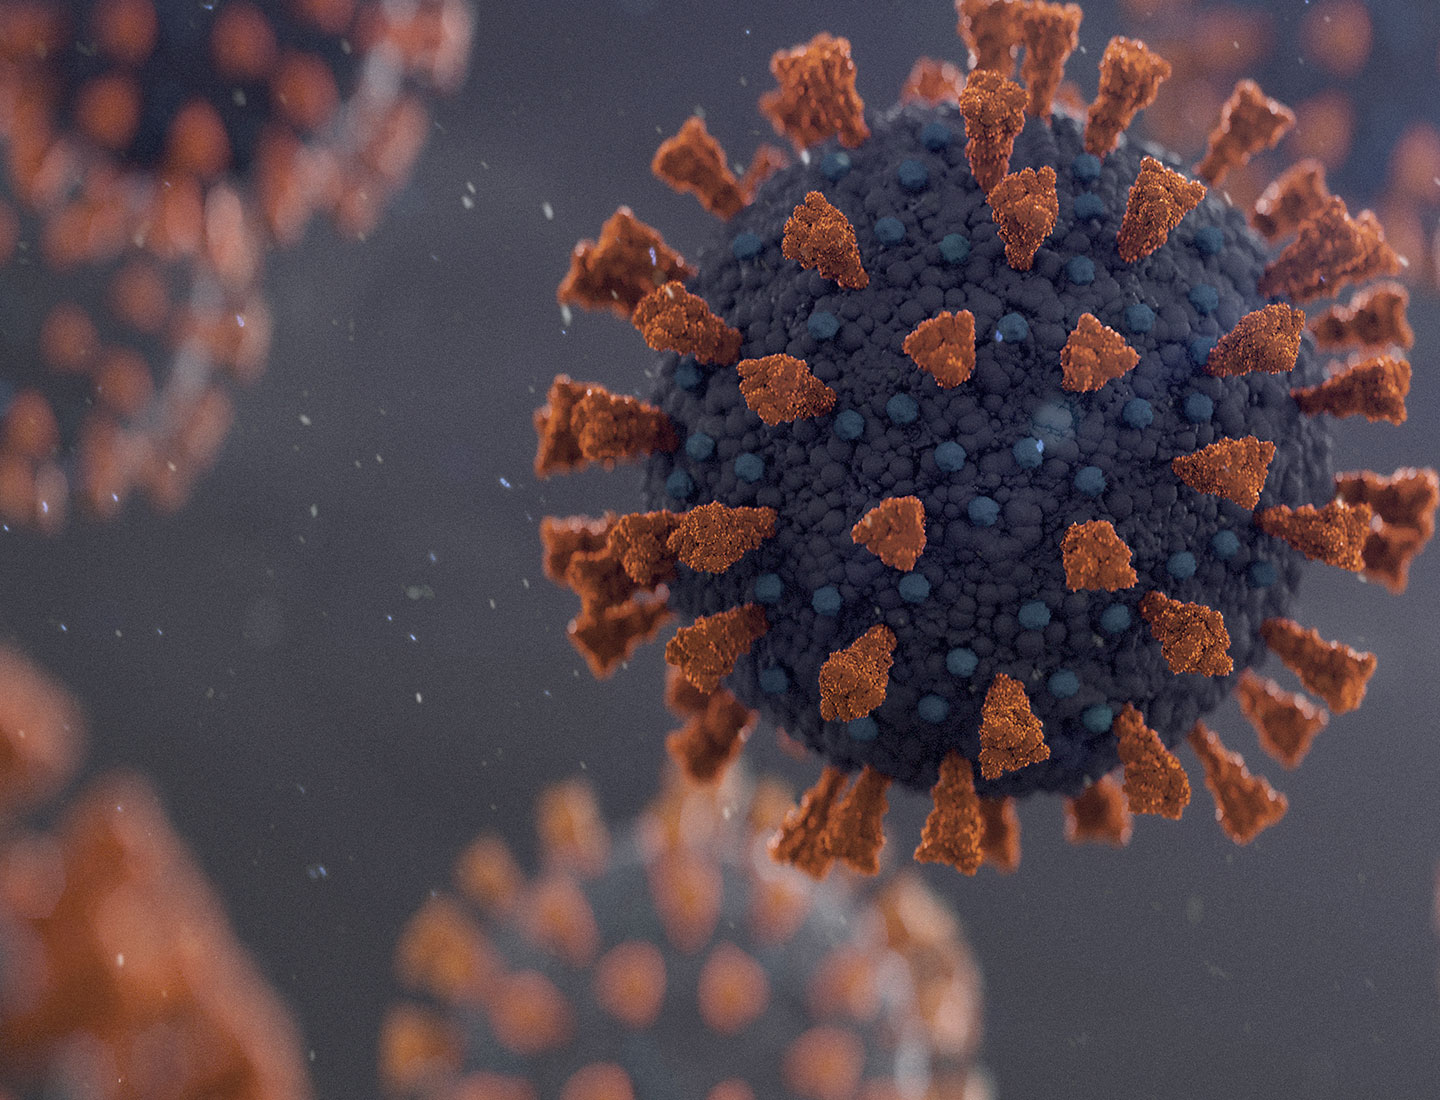 How do viruses spread?